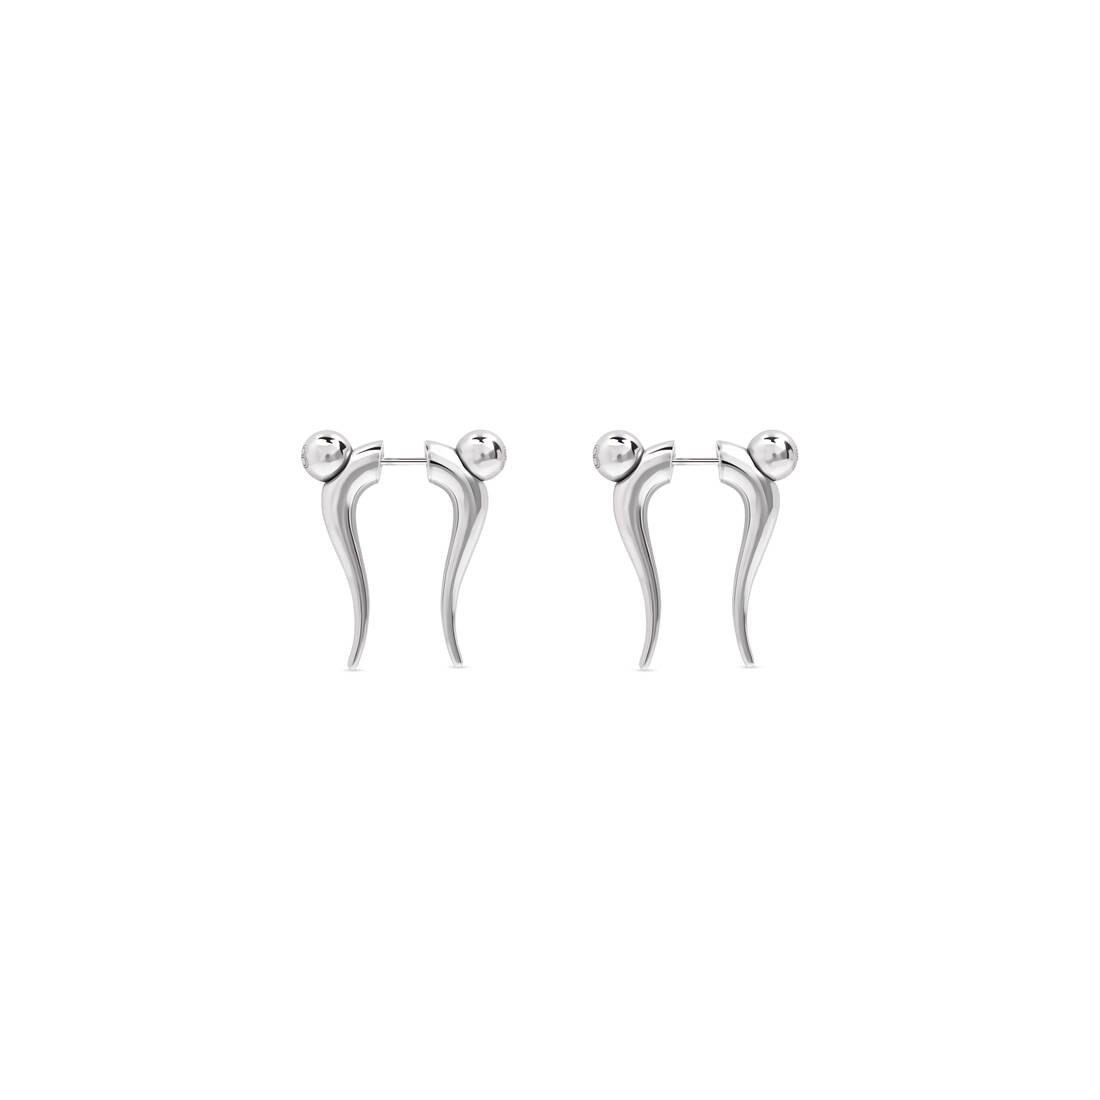 Force Double Horn Earrings  in Silver - 2